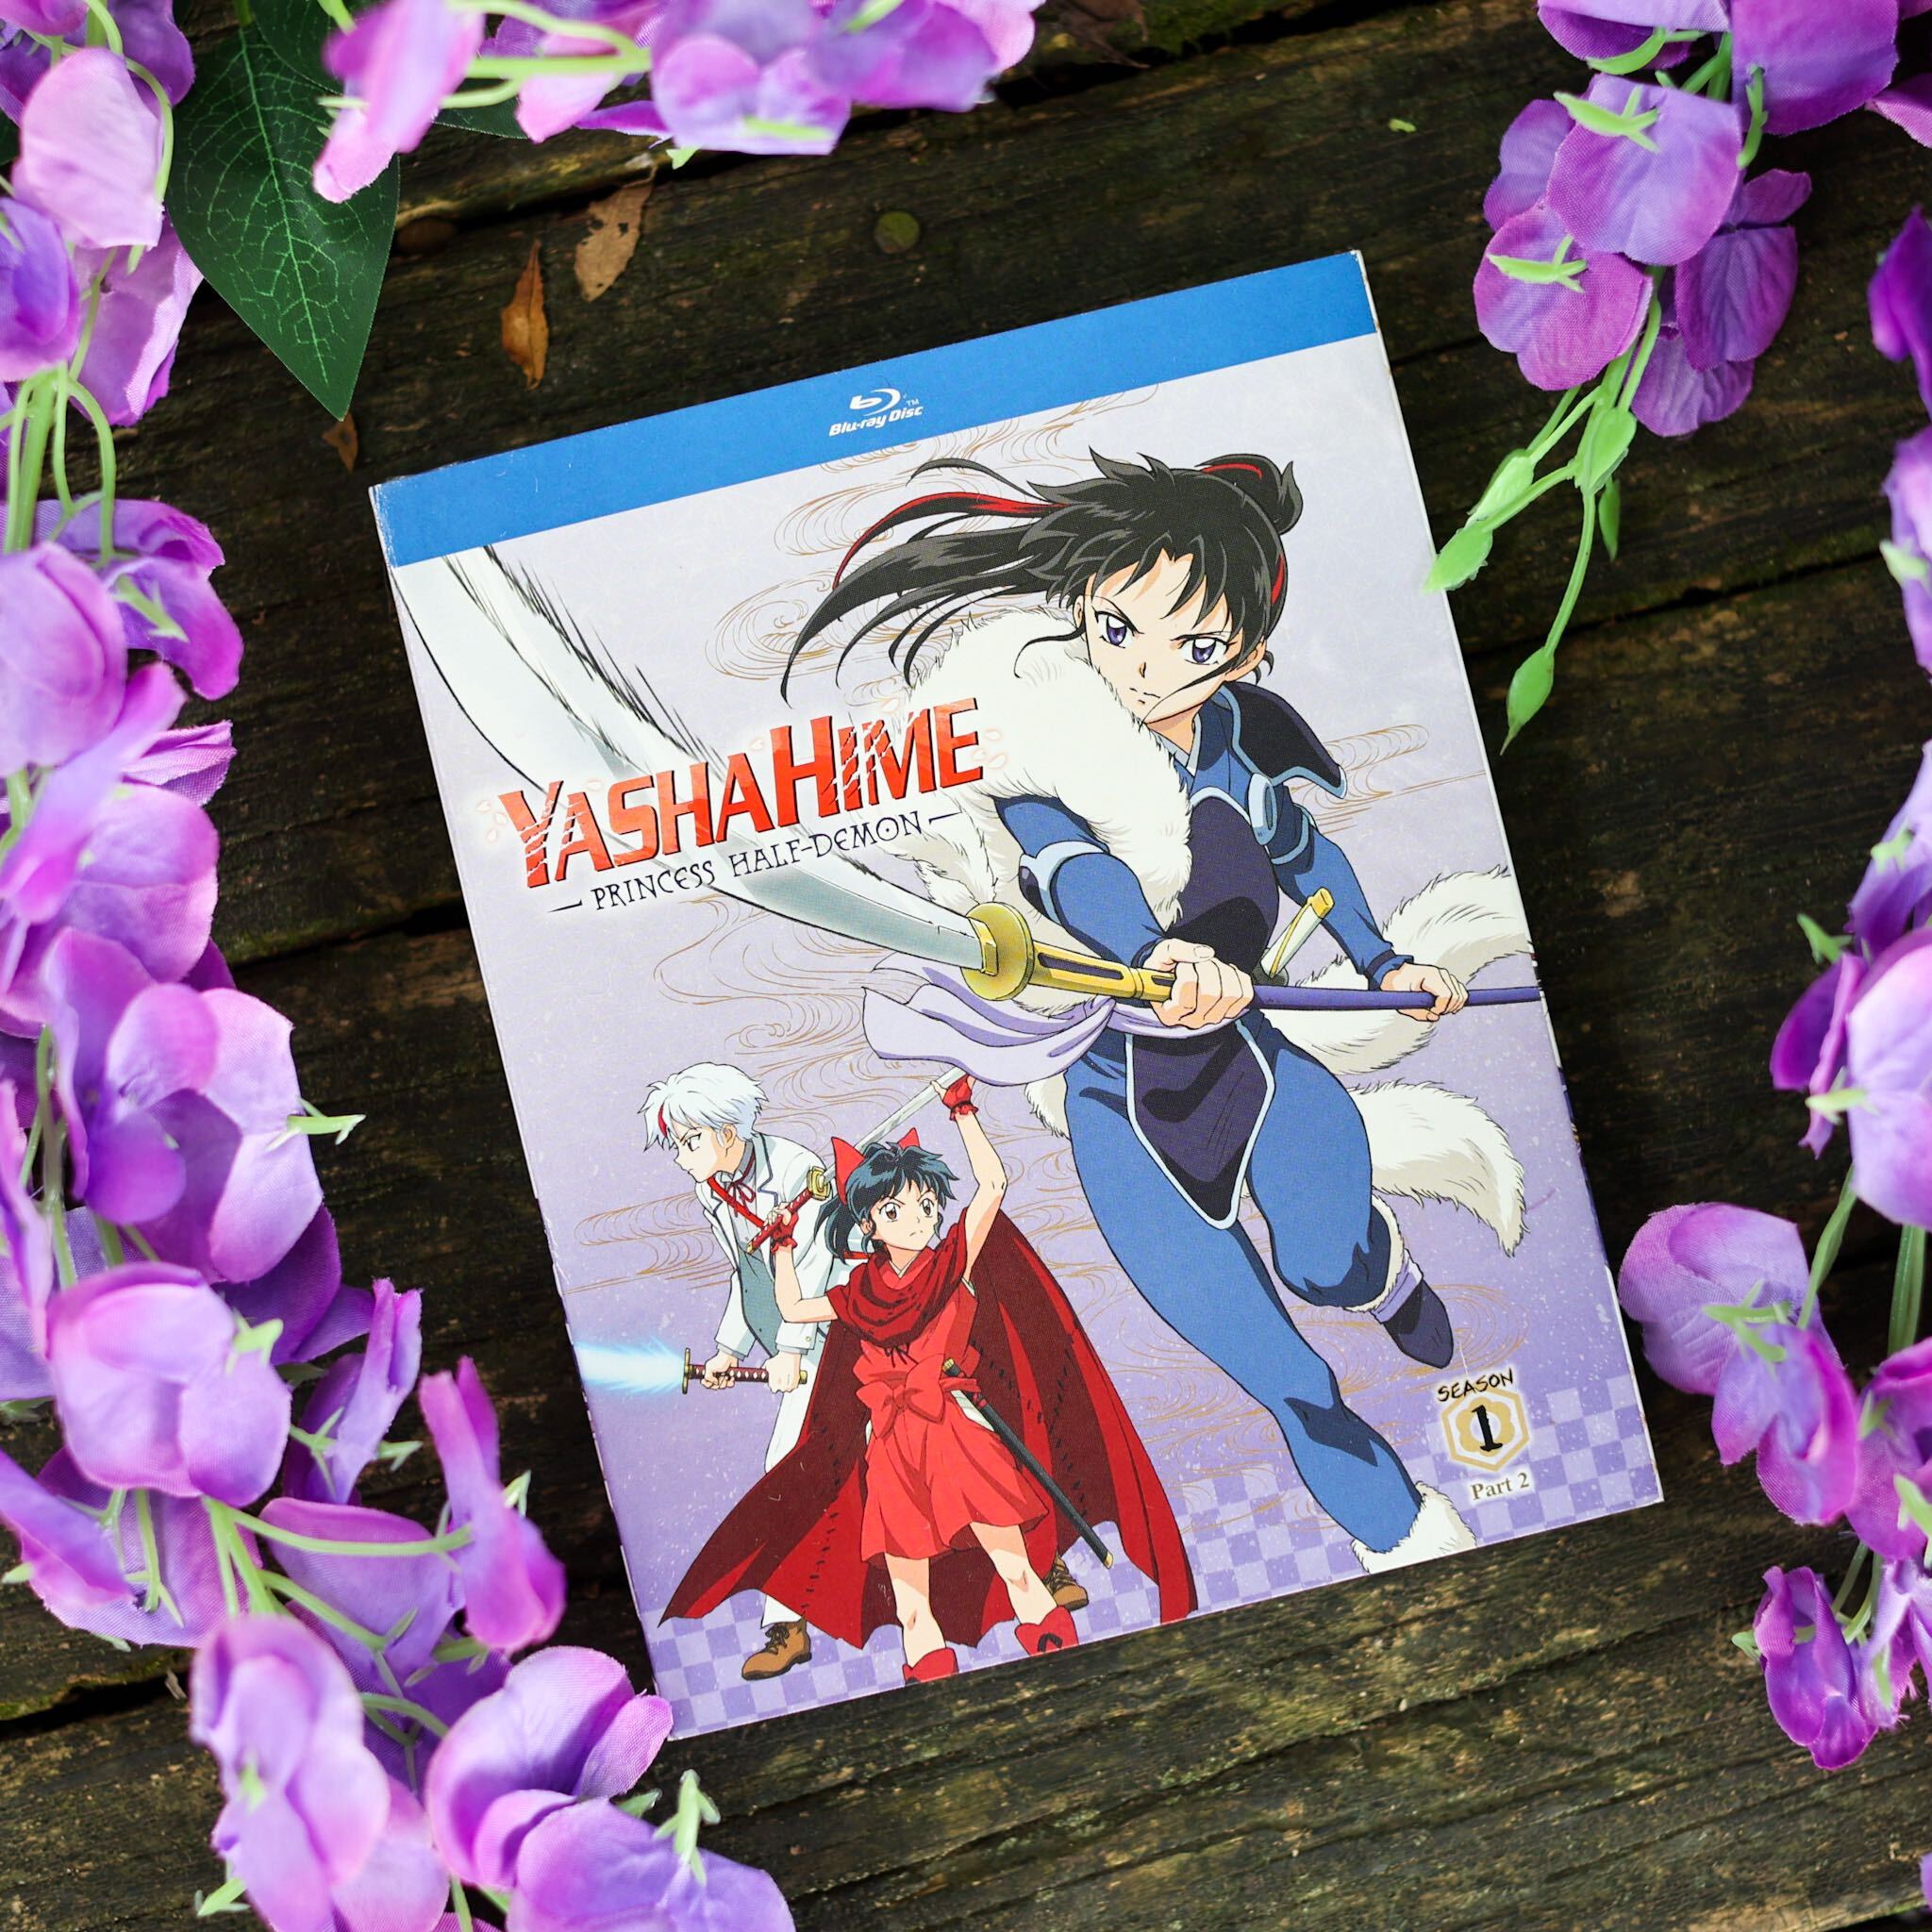  Yashahime: Princess Half-Demon Season 2 Part 2 (BD